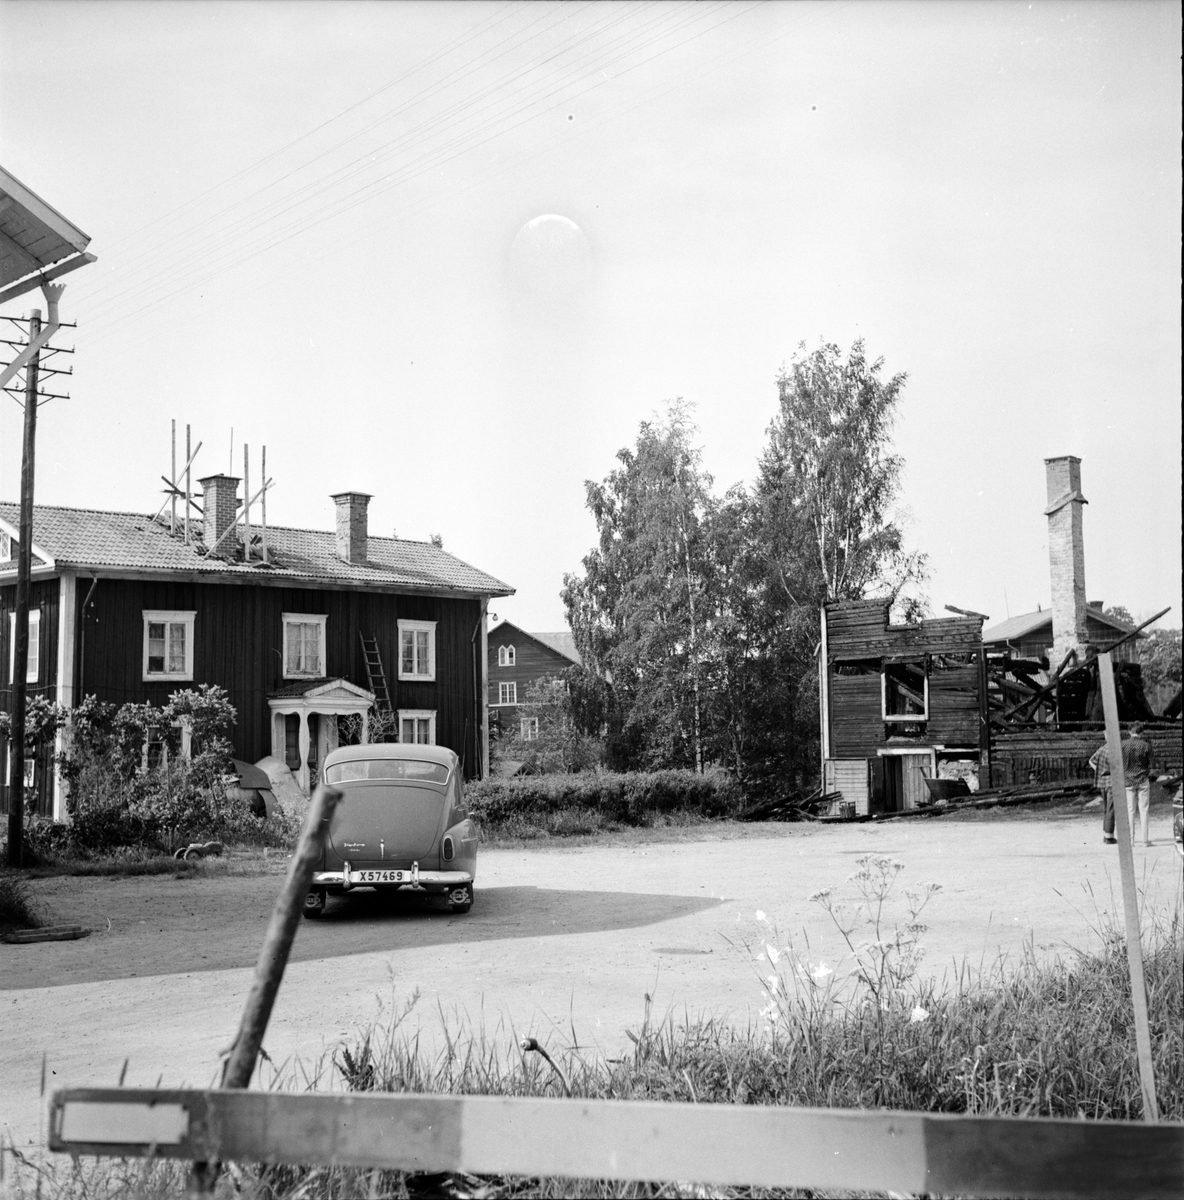 Hå, saftfabrik, efter brand, 21 juni 1966.
Bilen en Volvo PV444, registreringsnummer X57469.